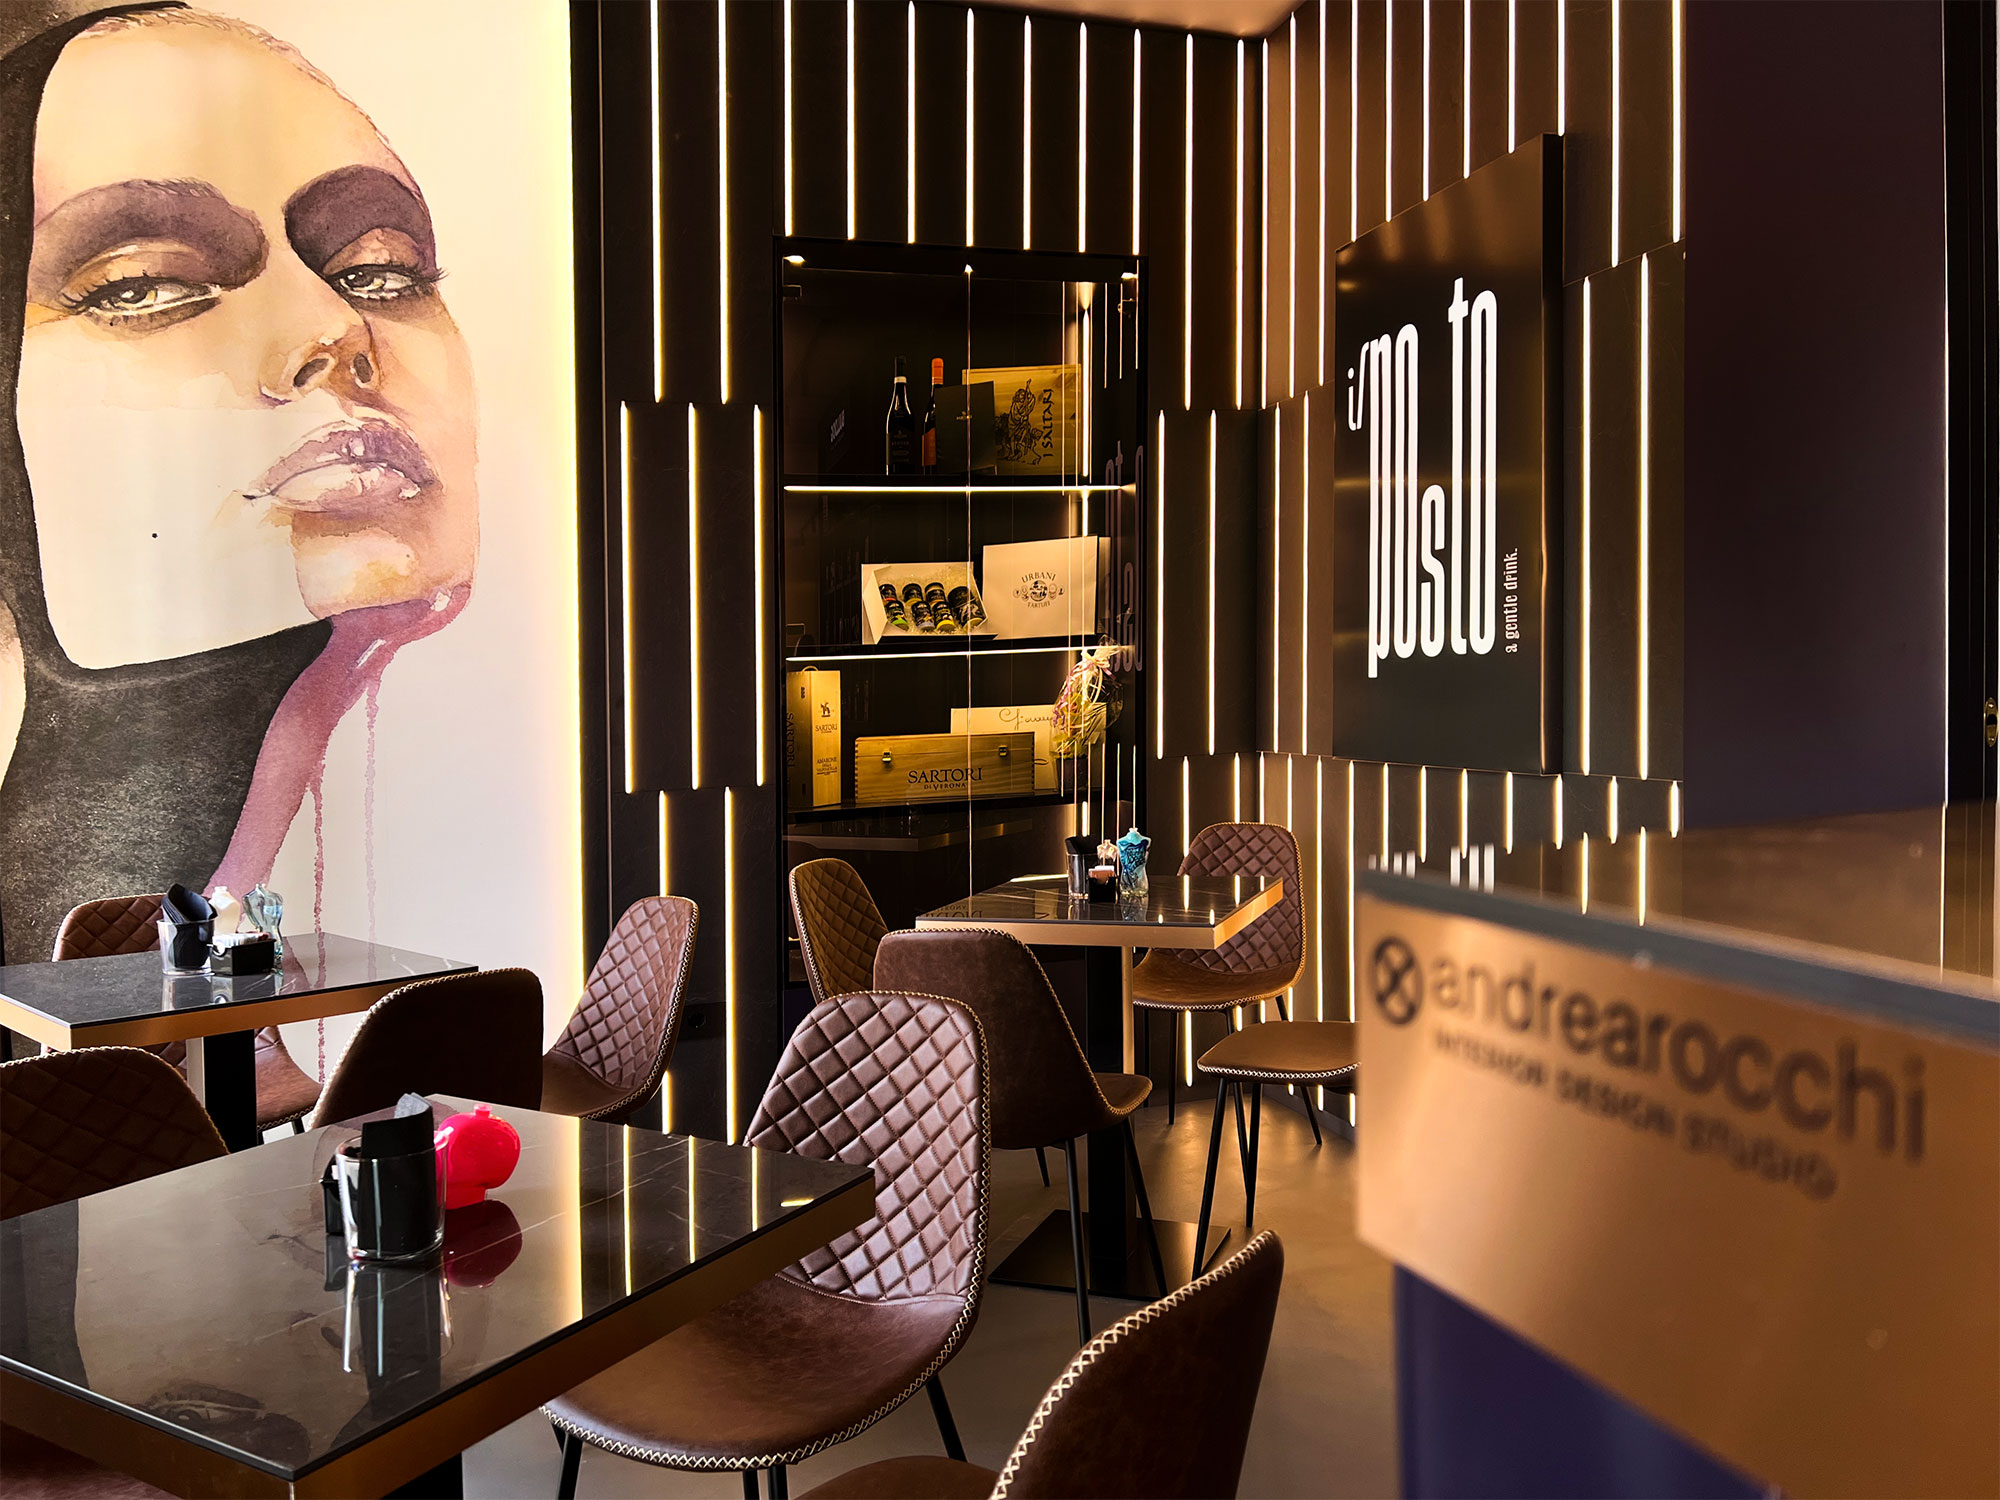 Il posto lounge bar – Progetto by Andrea Rocchi